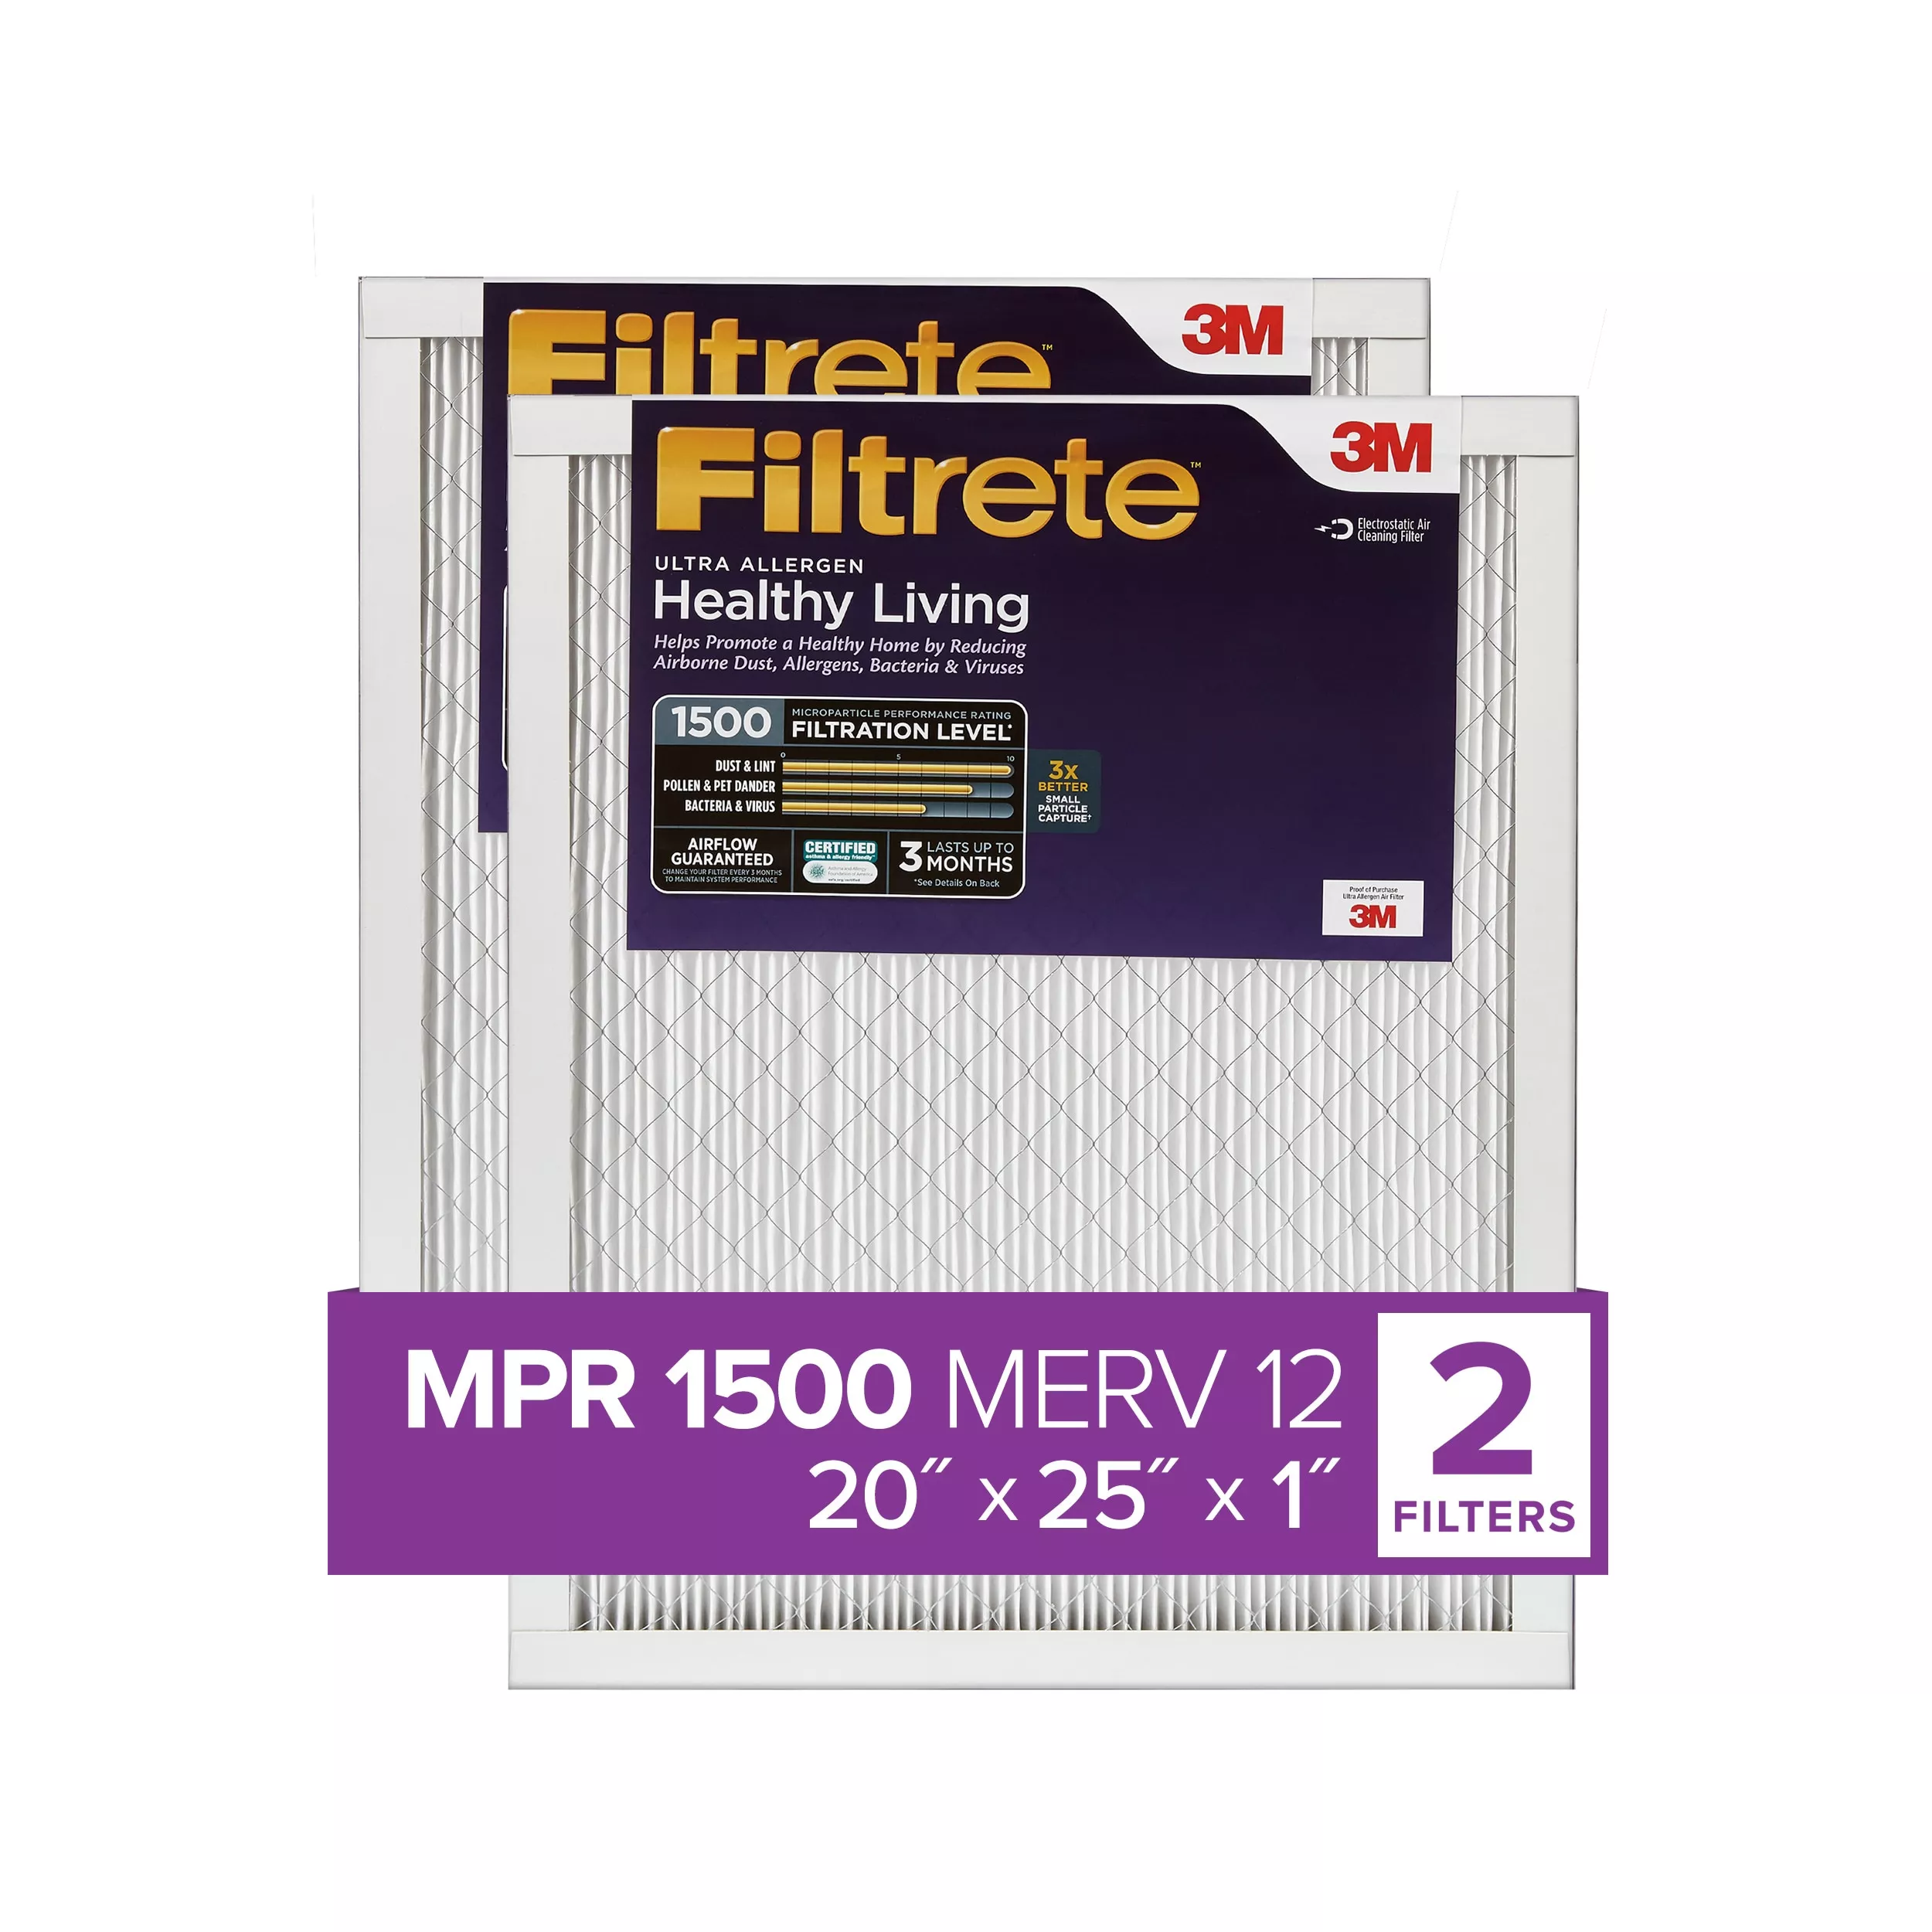 Filtrete™ Ultra Allergen Reduction Filter UR03-2PK-1E, 20 in x 25 in x 1 in (50.8 cm x 63.5 cm x 2.5 cm)